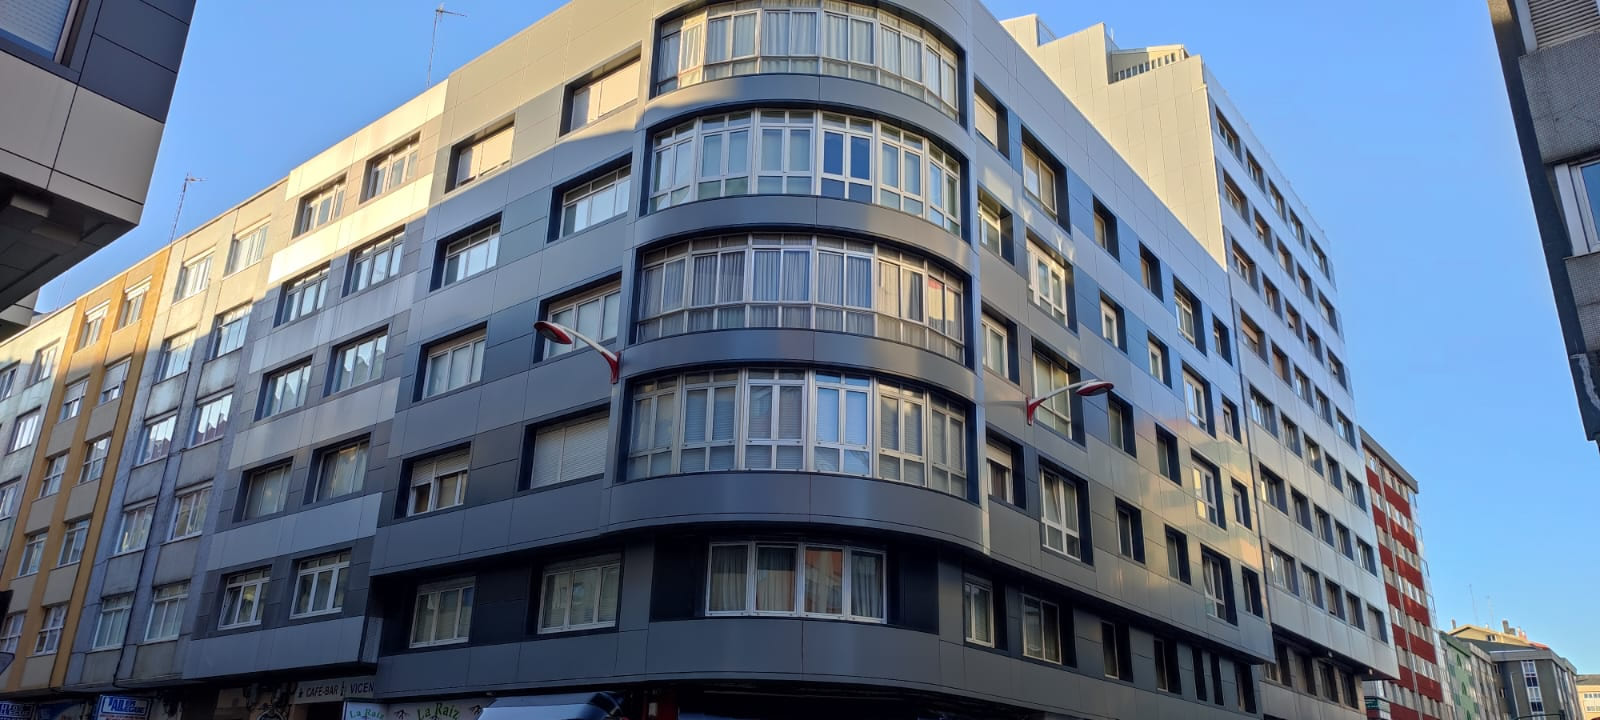 Imagen principal del edificio rehabilitado en A Coruña